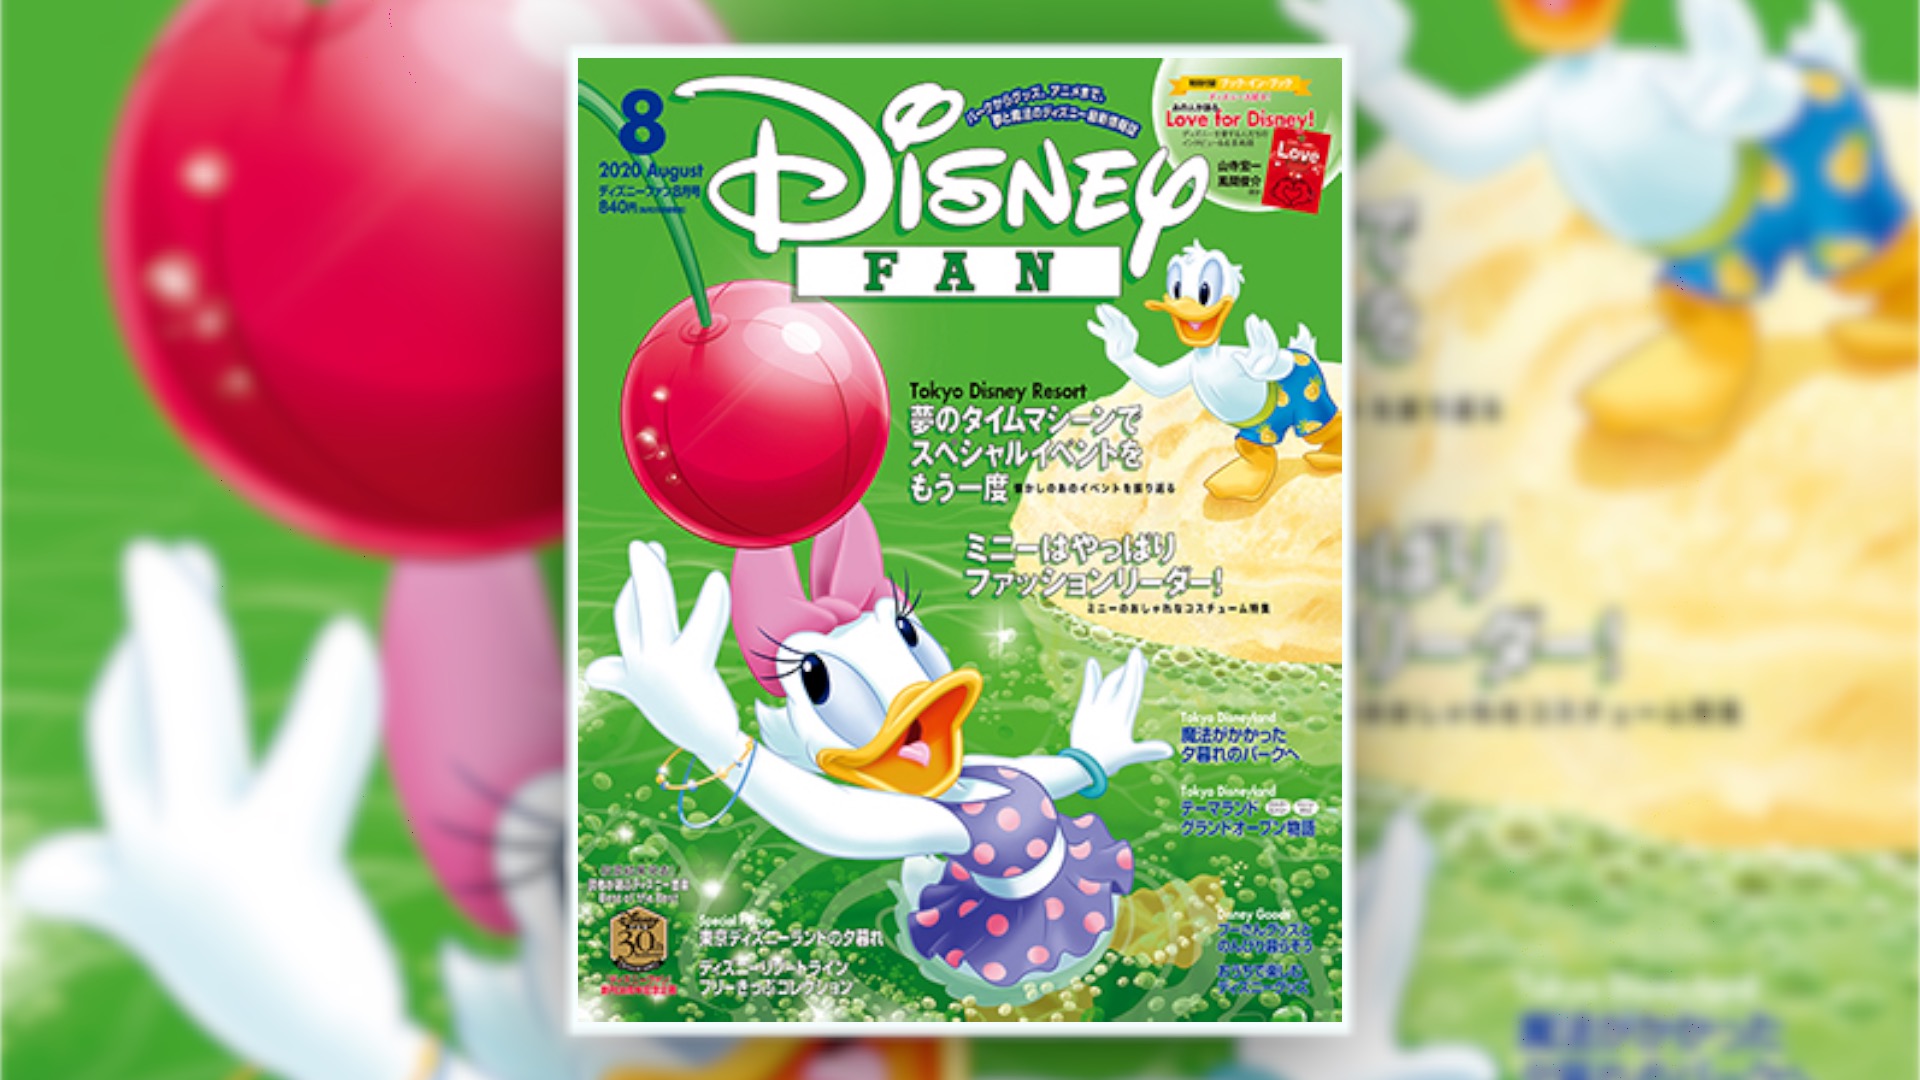 6月25日発売 ディズニーファン8月号まとめ 東京ディズニーリゾートの今までのスペシャルイベントを振り返ろう ミニーのコスチューム集 Disney Play Time